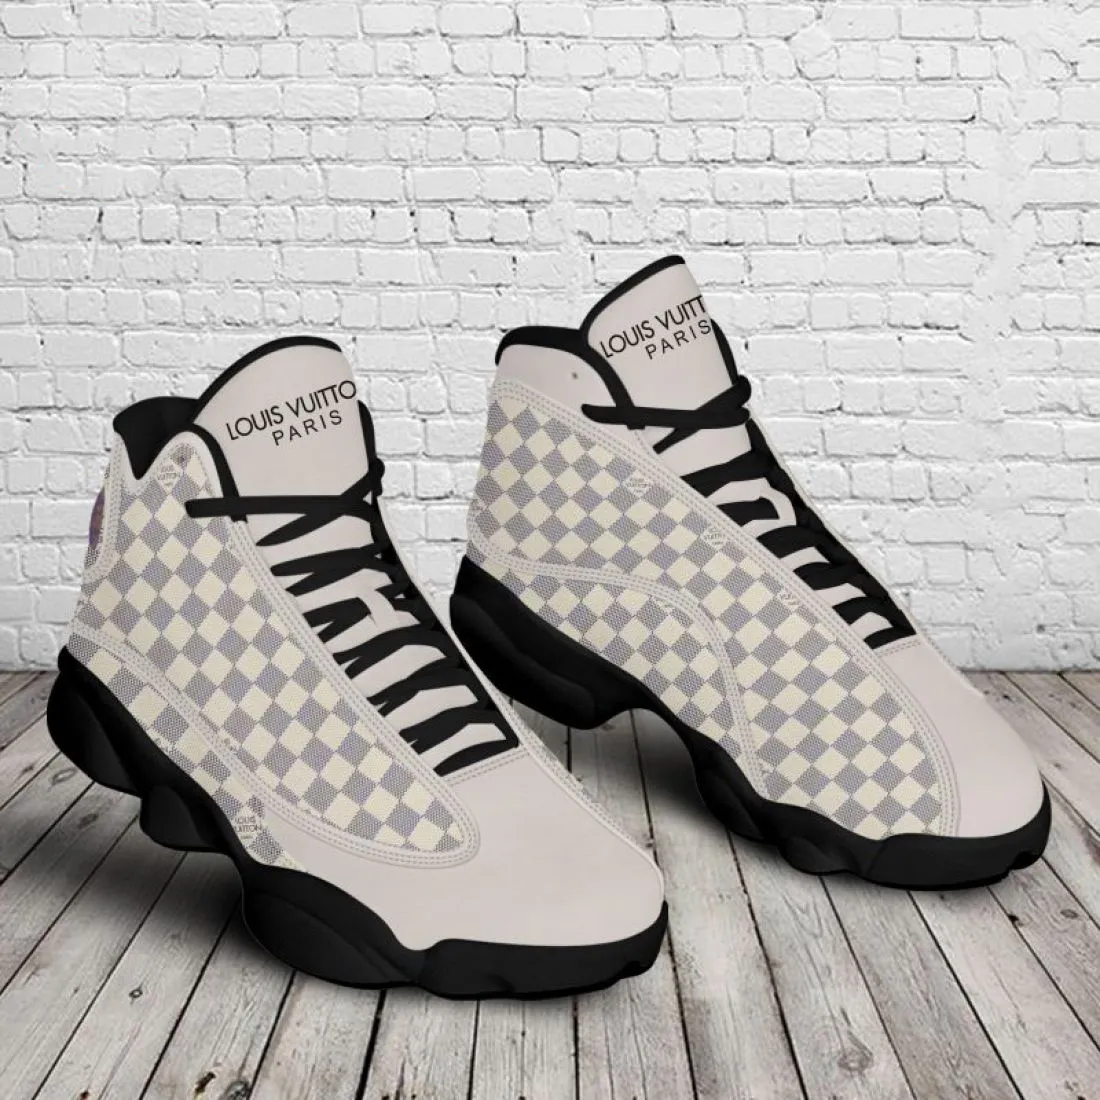 Louis Vuitton Paris LV Air Jordan 13 Sneakers Shoes Trending Fashion Luxury